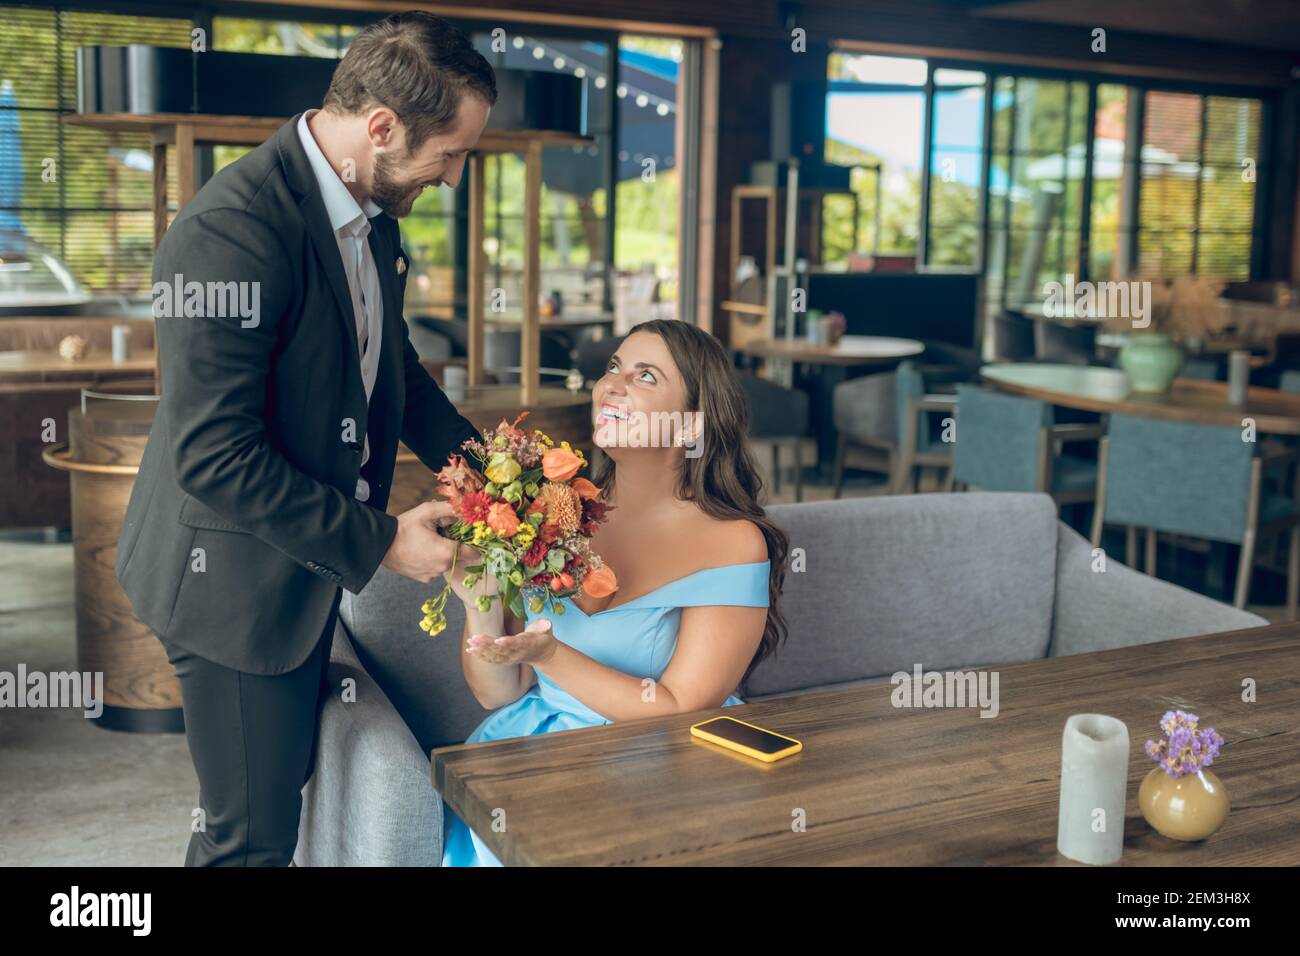 Homme souriant avec des fleurs touchant l'épaule de la femme Banque D'Images